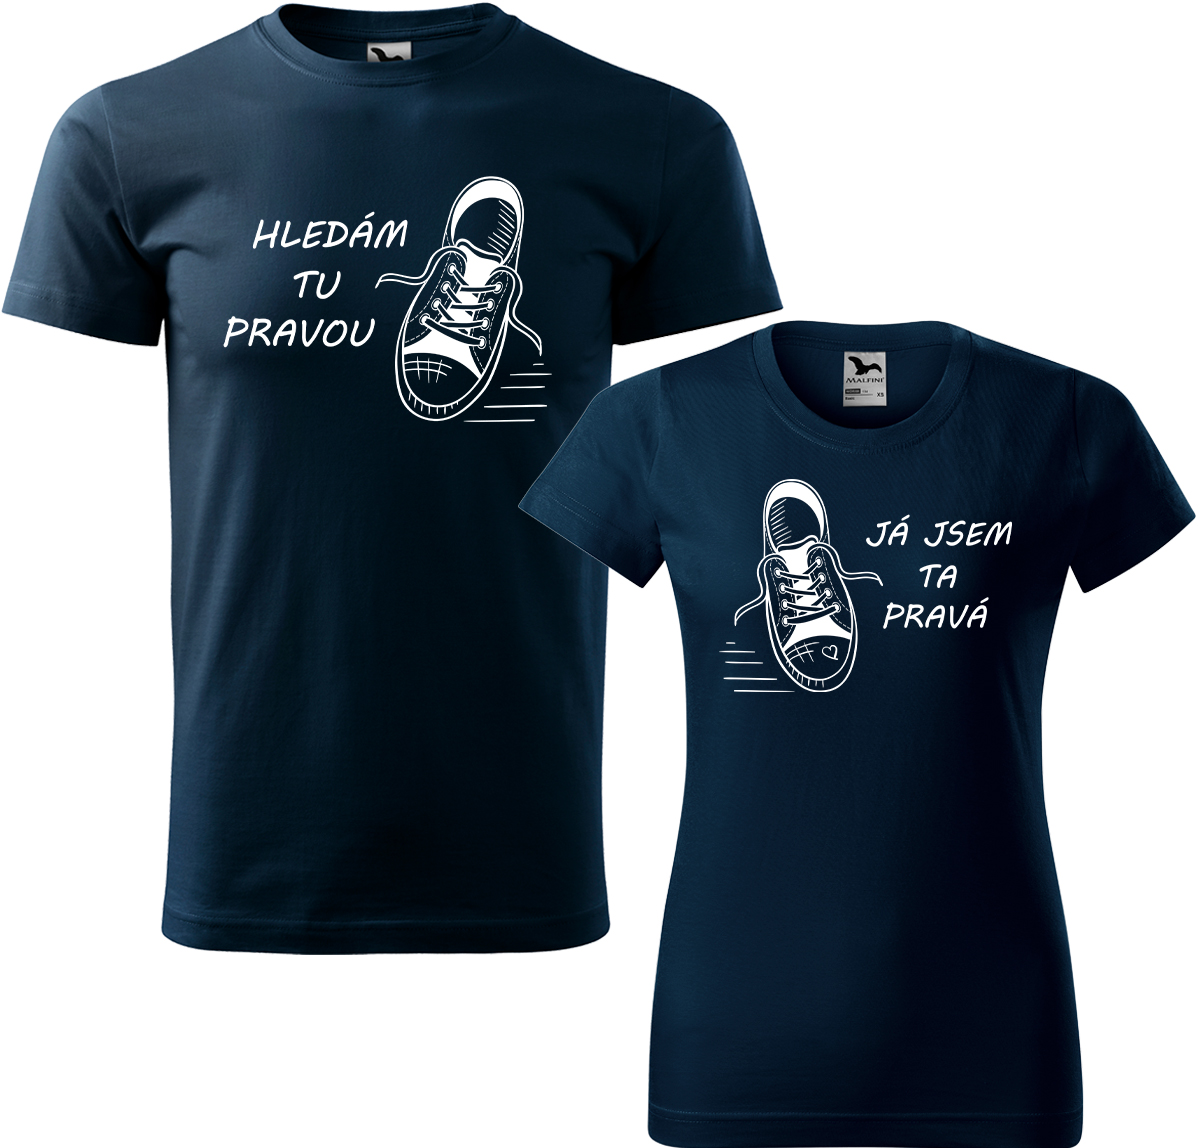 Trička pro páry - Kecky Barva: Námořní modrá (02), Velikost dámské tričko: 3XL, Velikost pánské tričko: 3XL